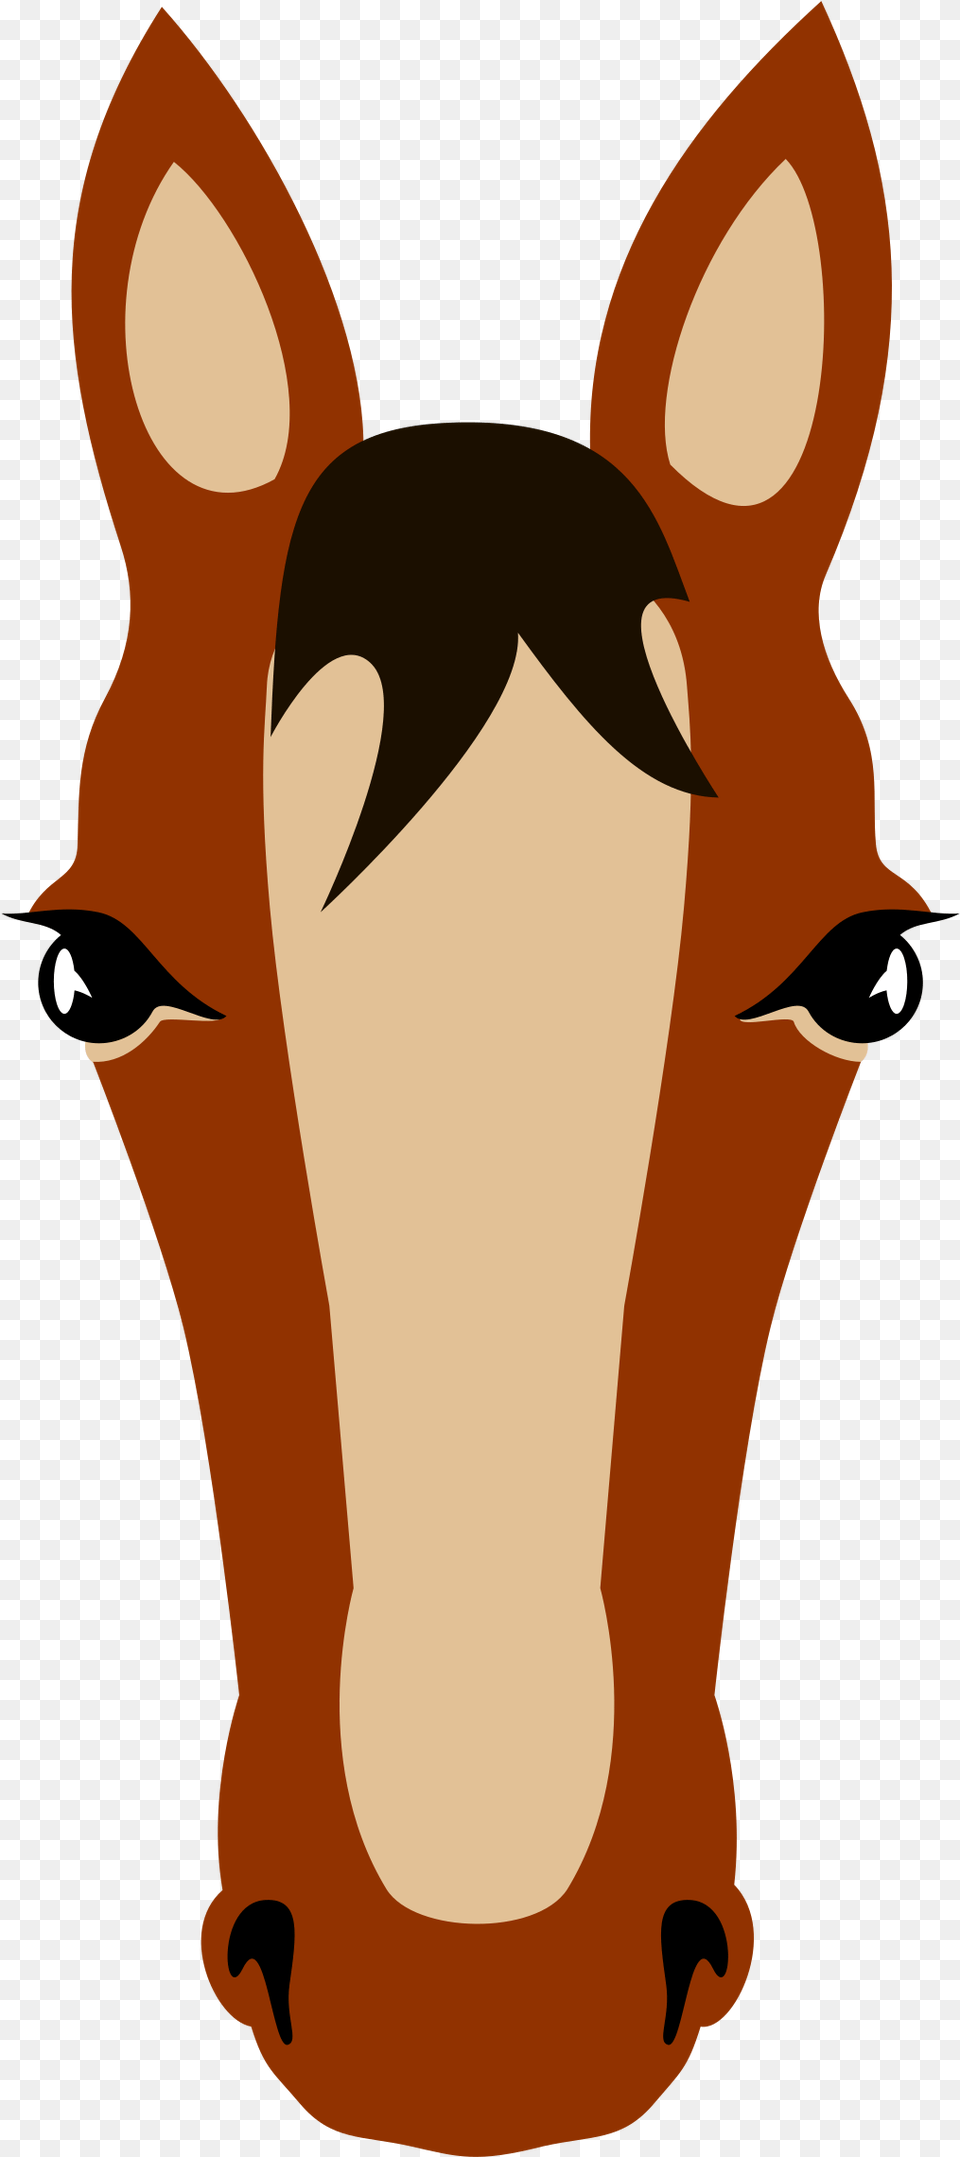 Horse Face Cara De Caballo Dibujo, Animal, Colt Horse, Mammal, Snout Png